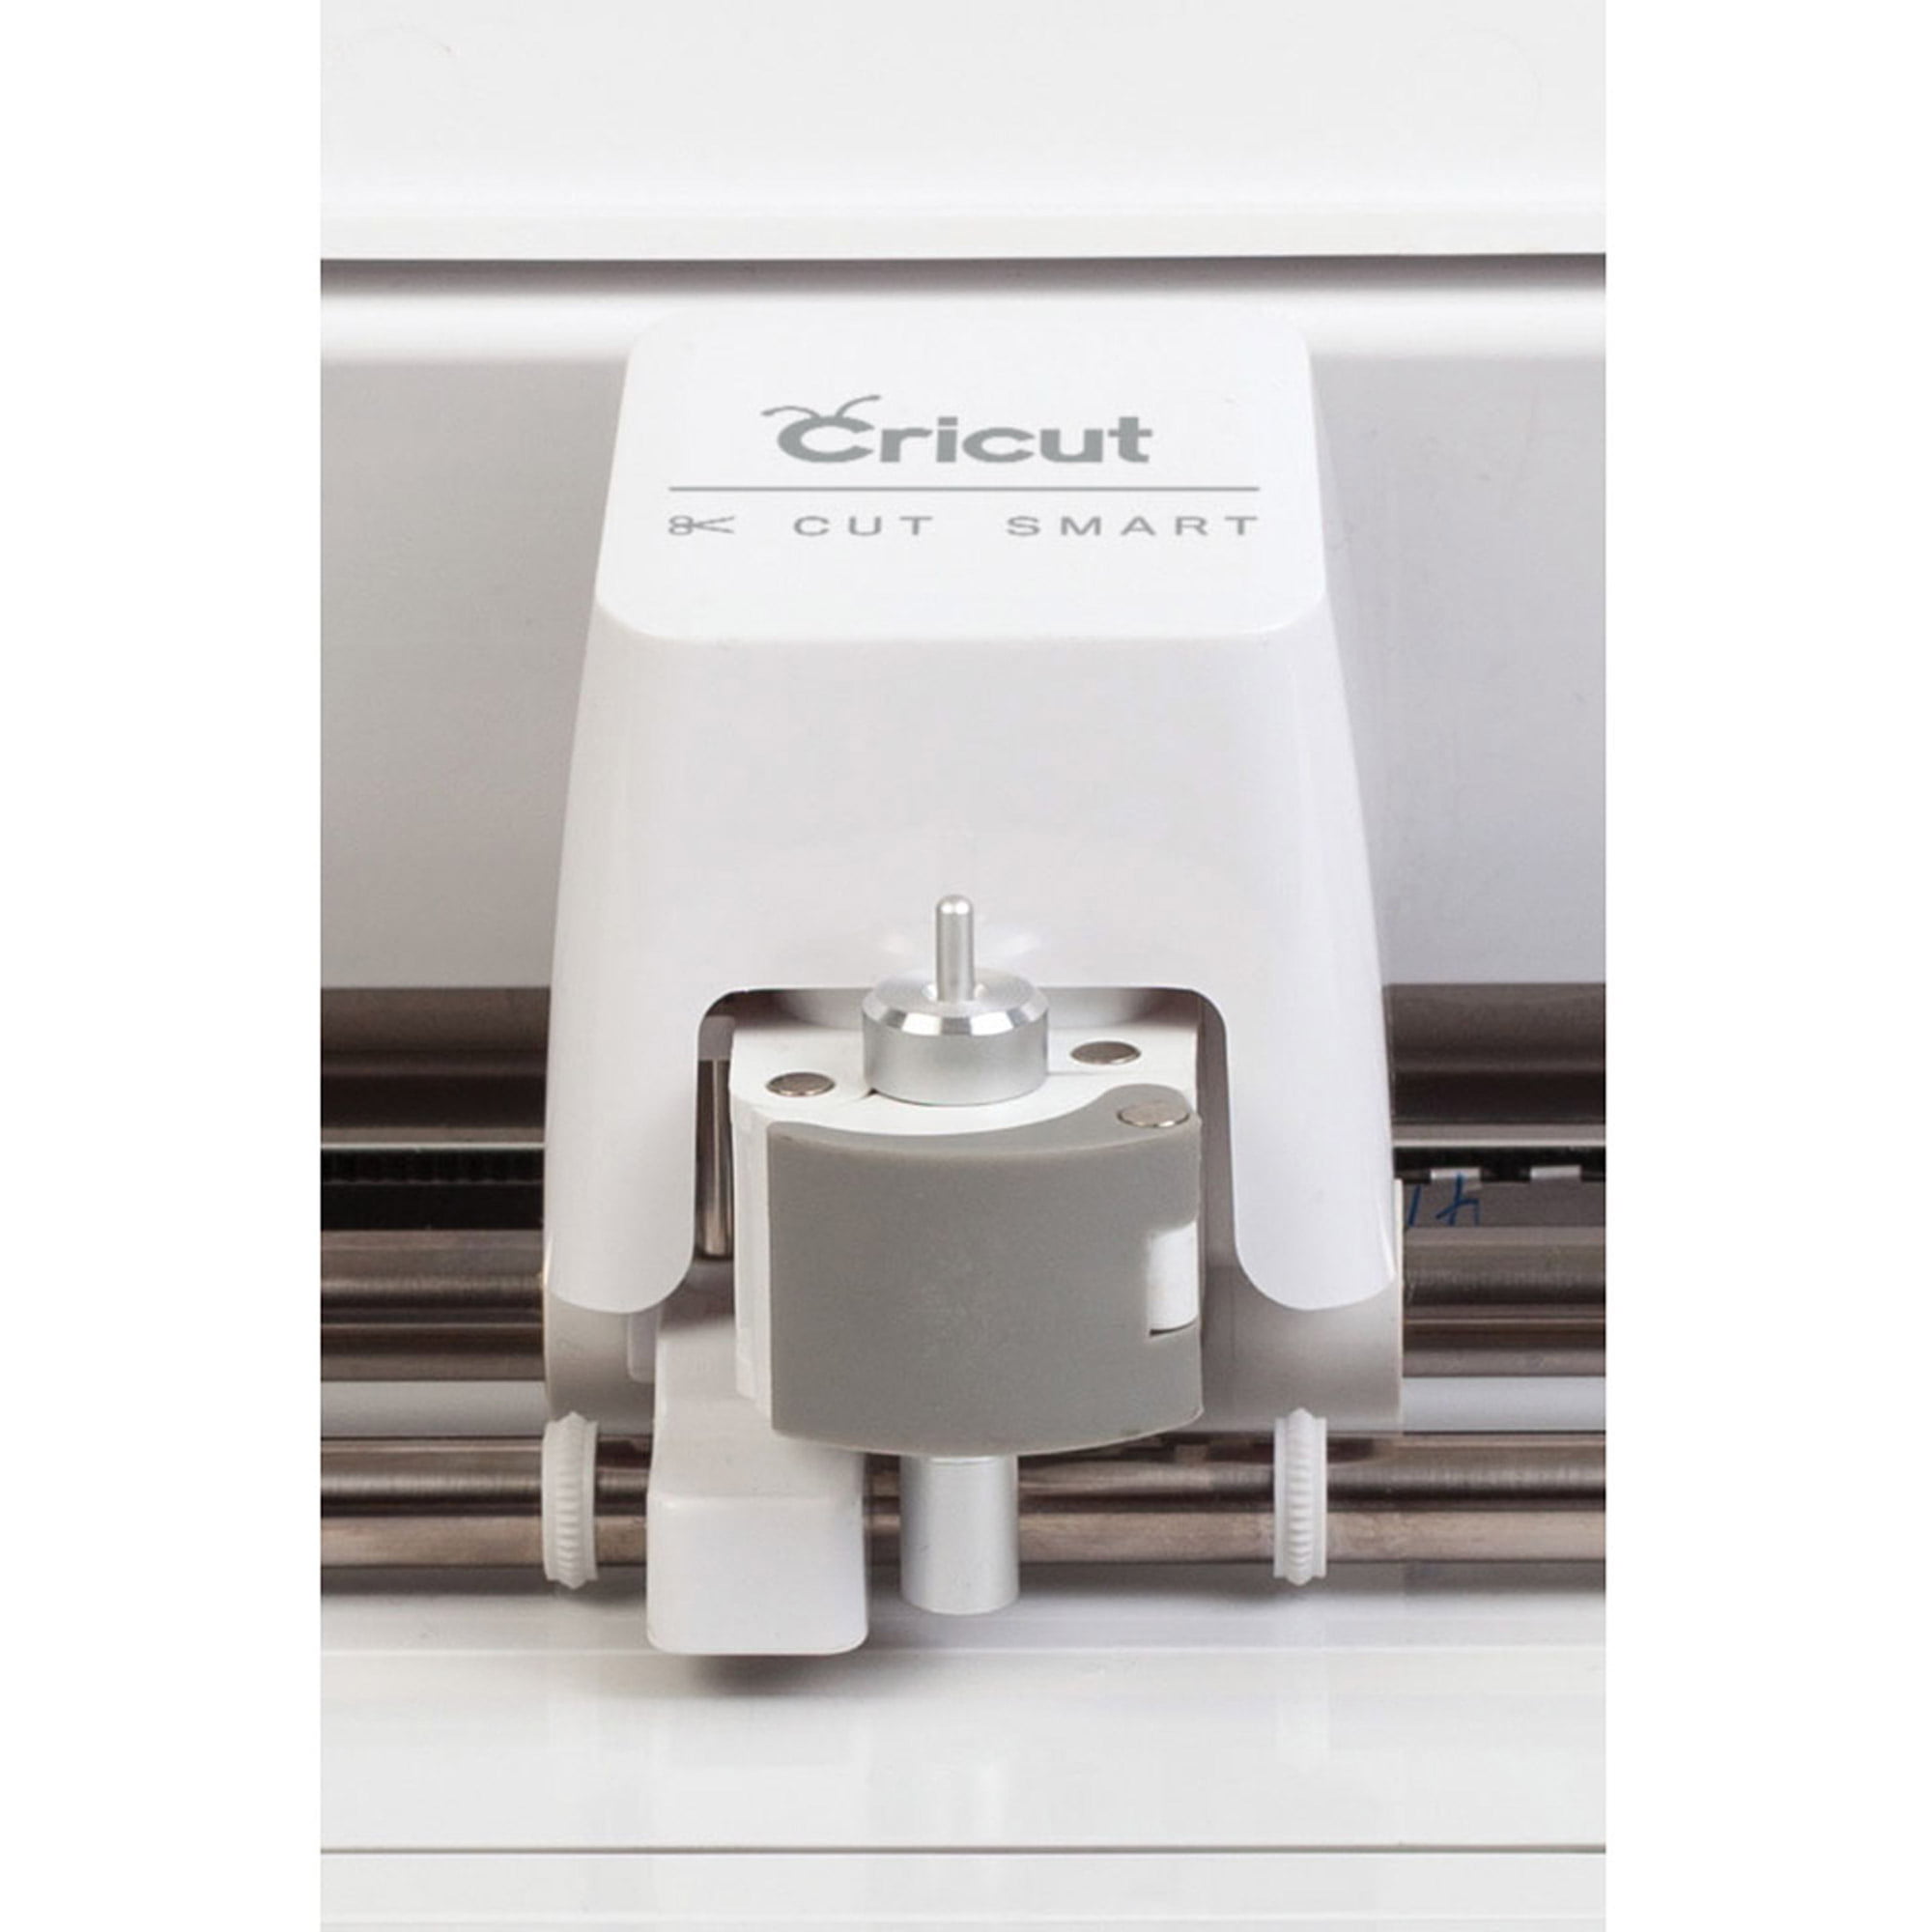  Cricut Explore One Cutting Machine